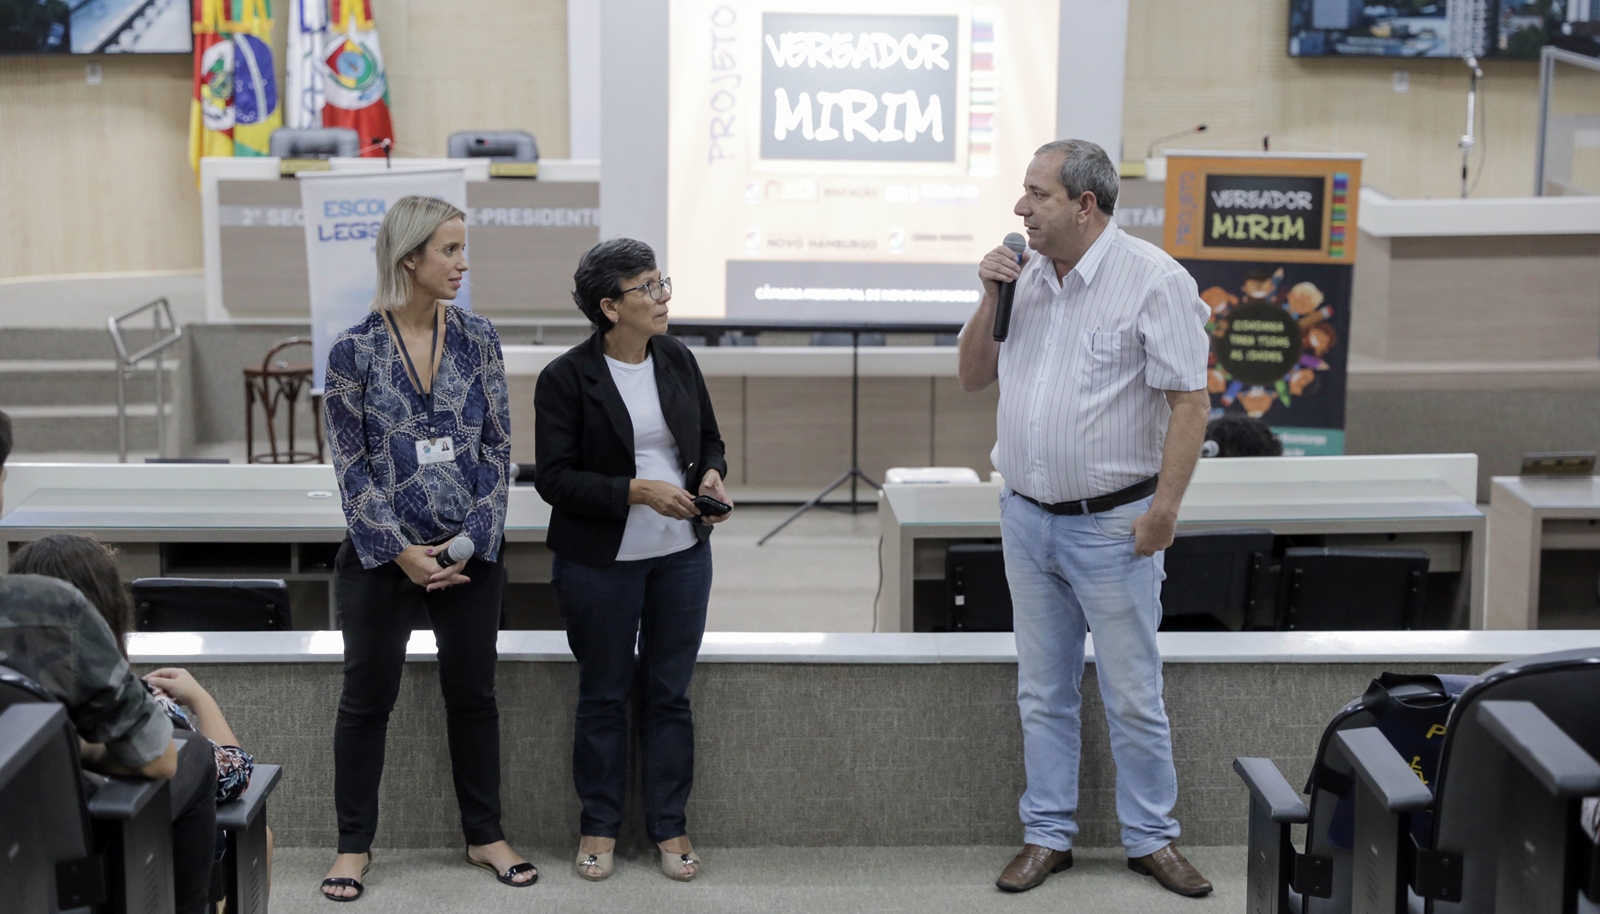 Projeto Vereador Mirim recebe alunos da escola Eugênio Nelson Ritzel